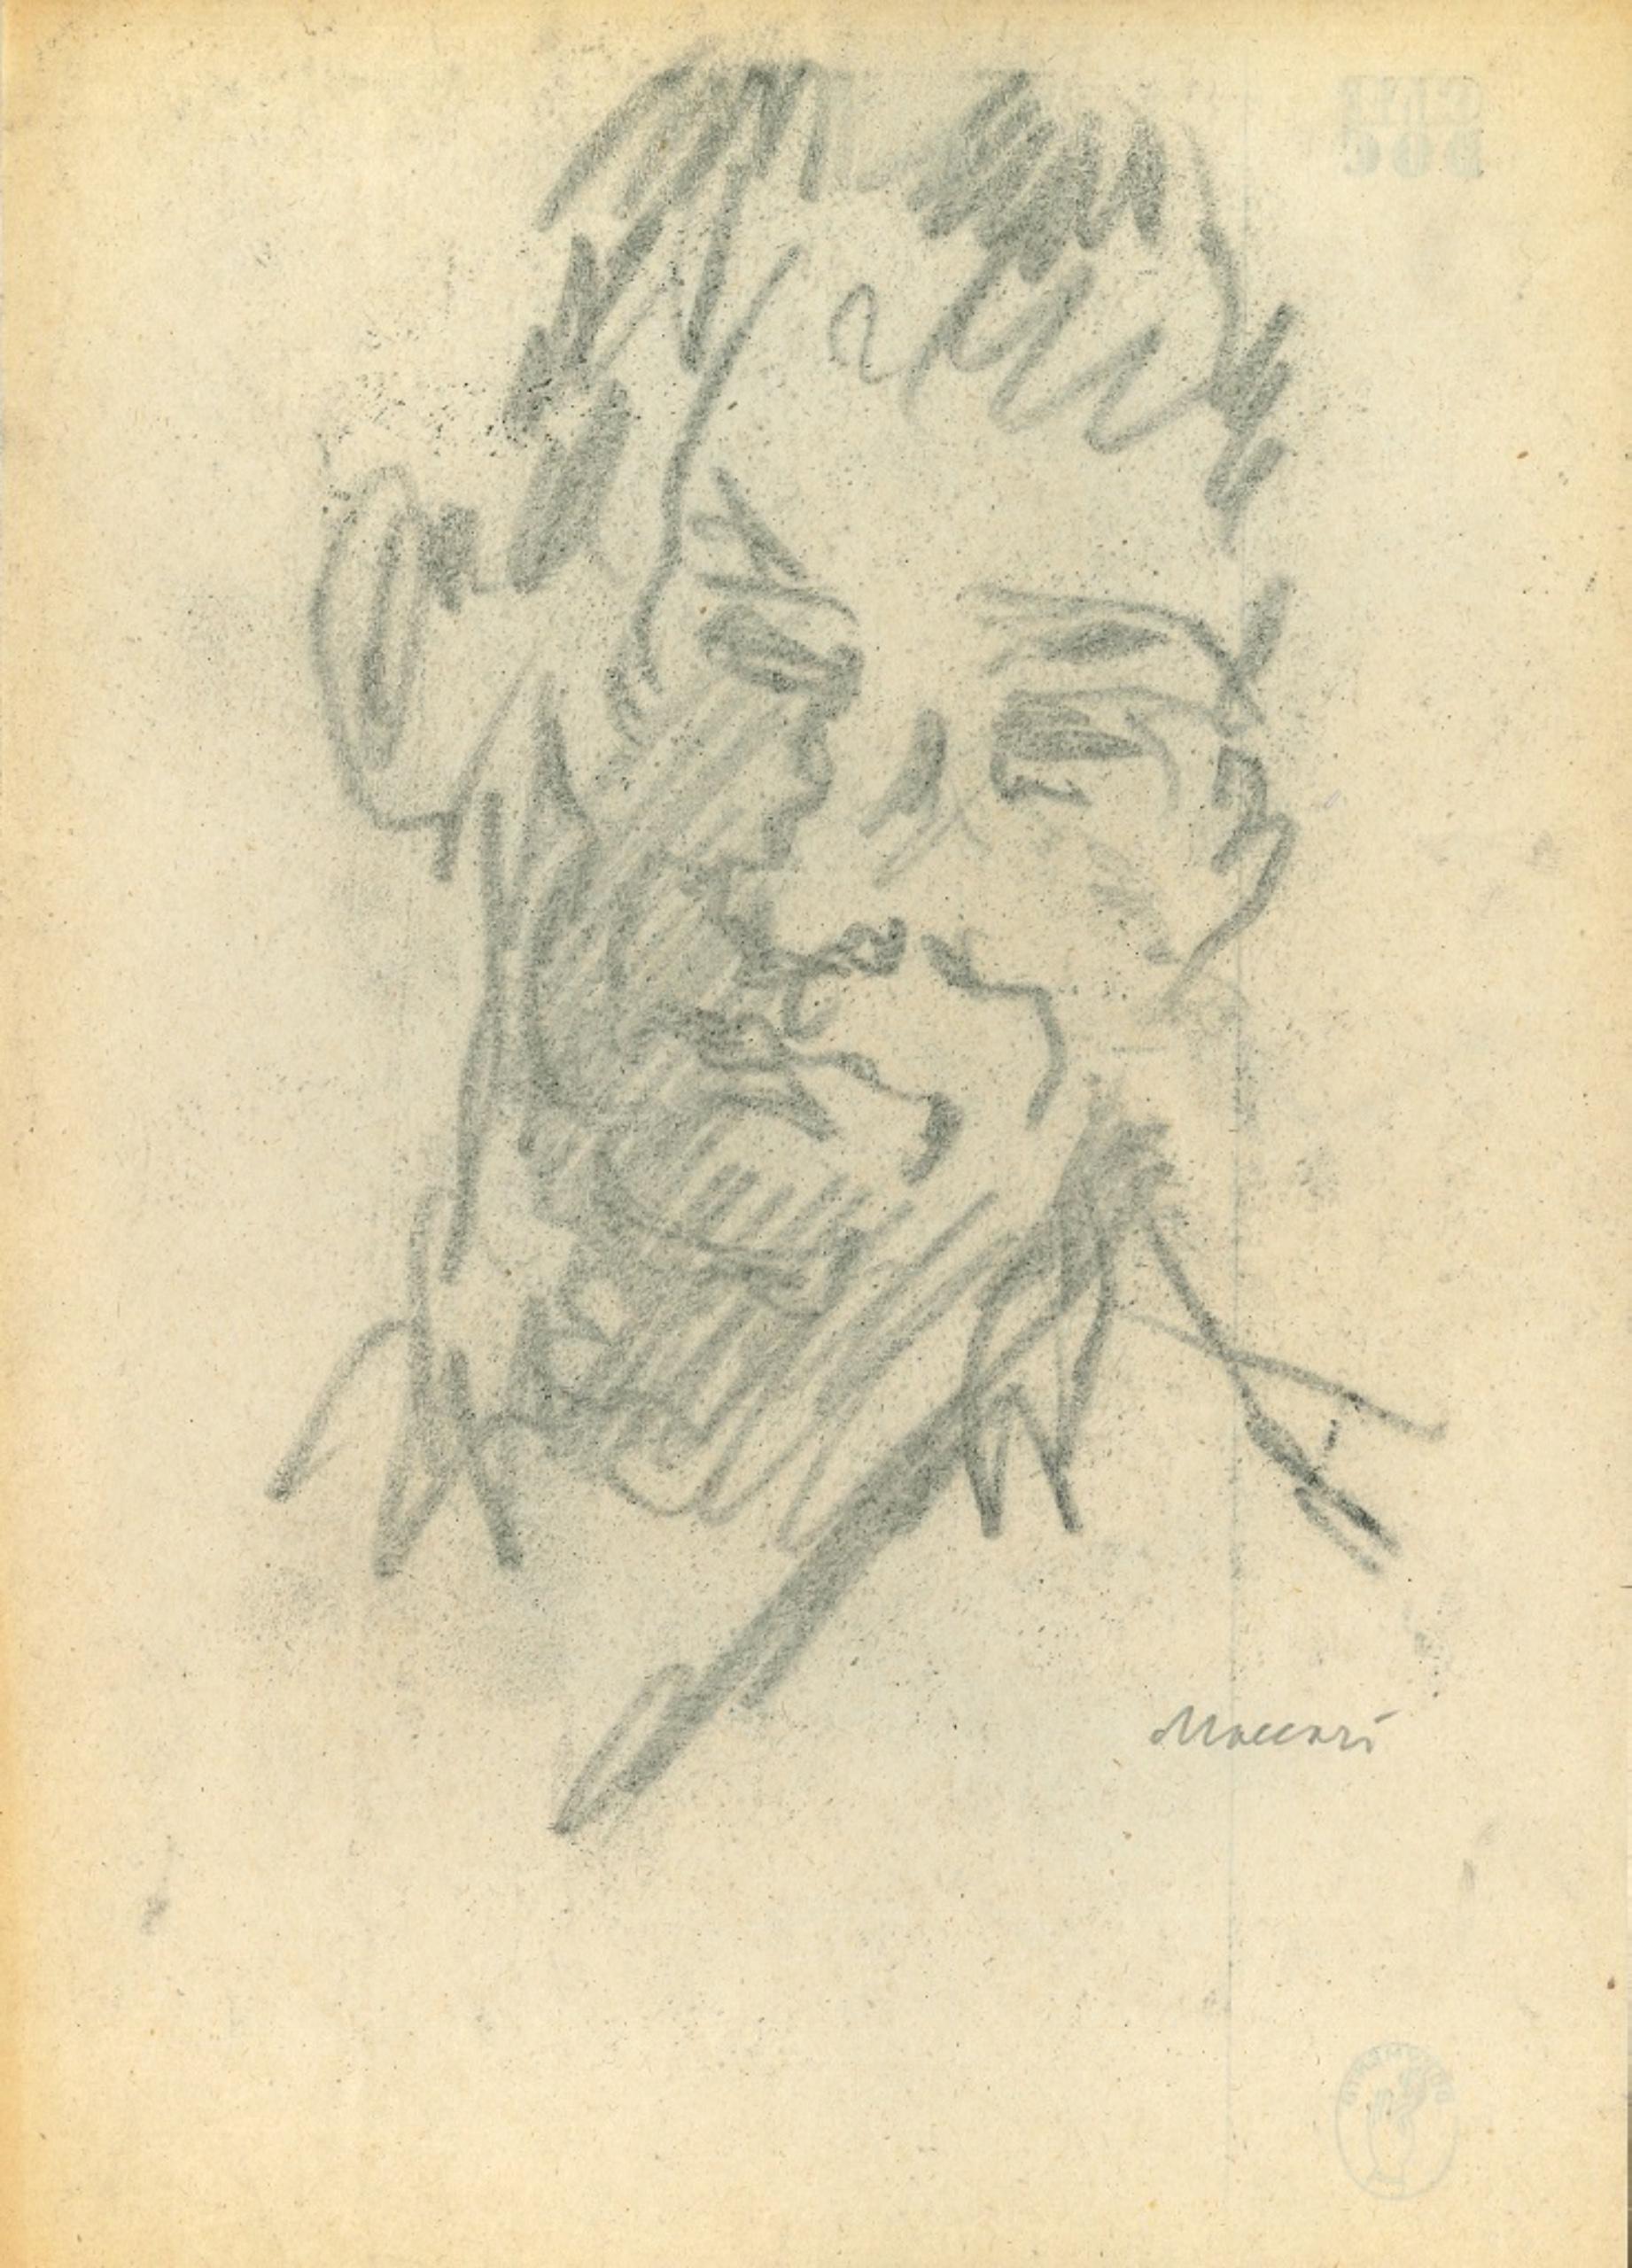 Das skizzierte Porträt ist eine Originalzeichnung auf Papier, die in den siebziger Jahren von dem großen italienischen Künstler und Journalisten Mino Maccari (Siena, 1898 - 1989) angefertigt wurde.

Zeichenkohle auf elfenbeinfarbenem